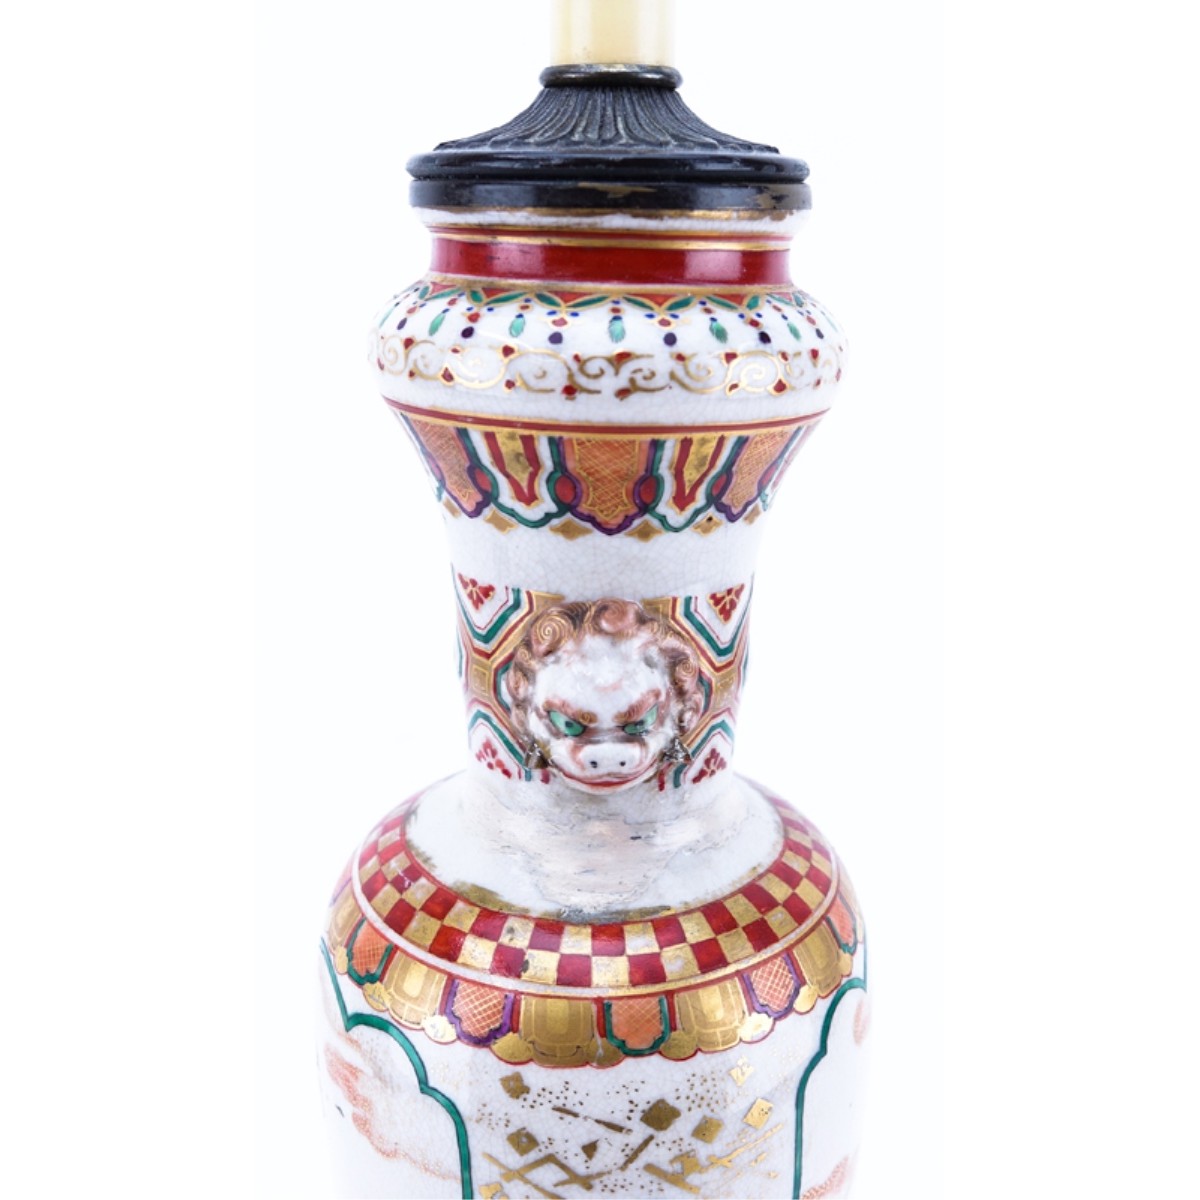 Antique Satsuma Porcelain Lamp